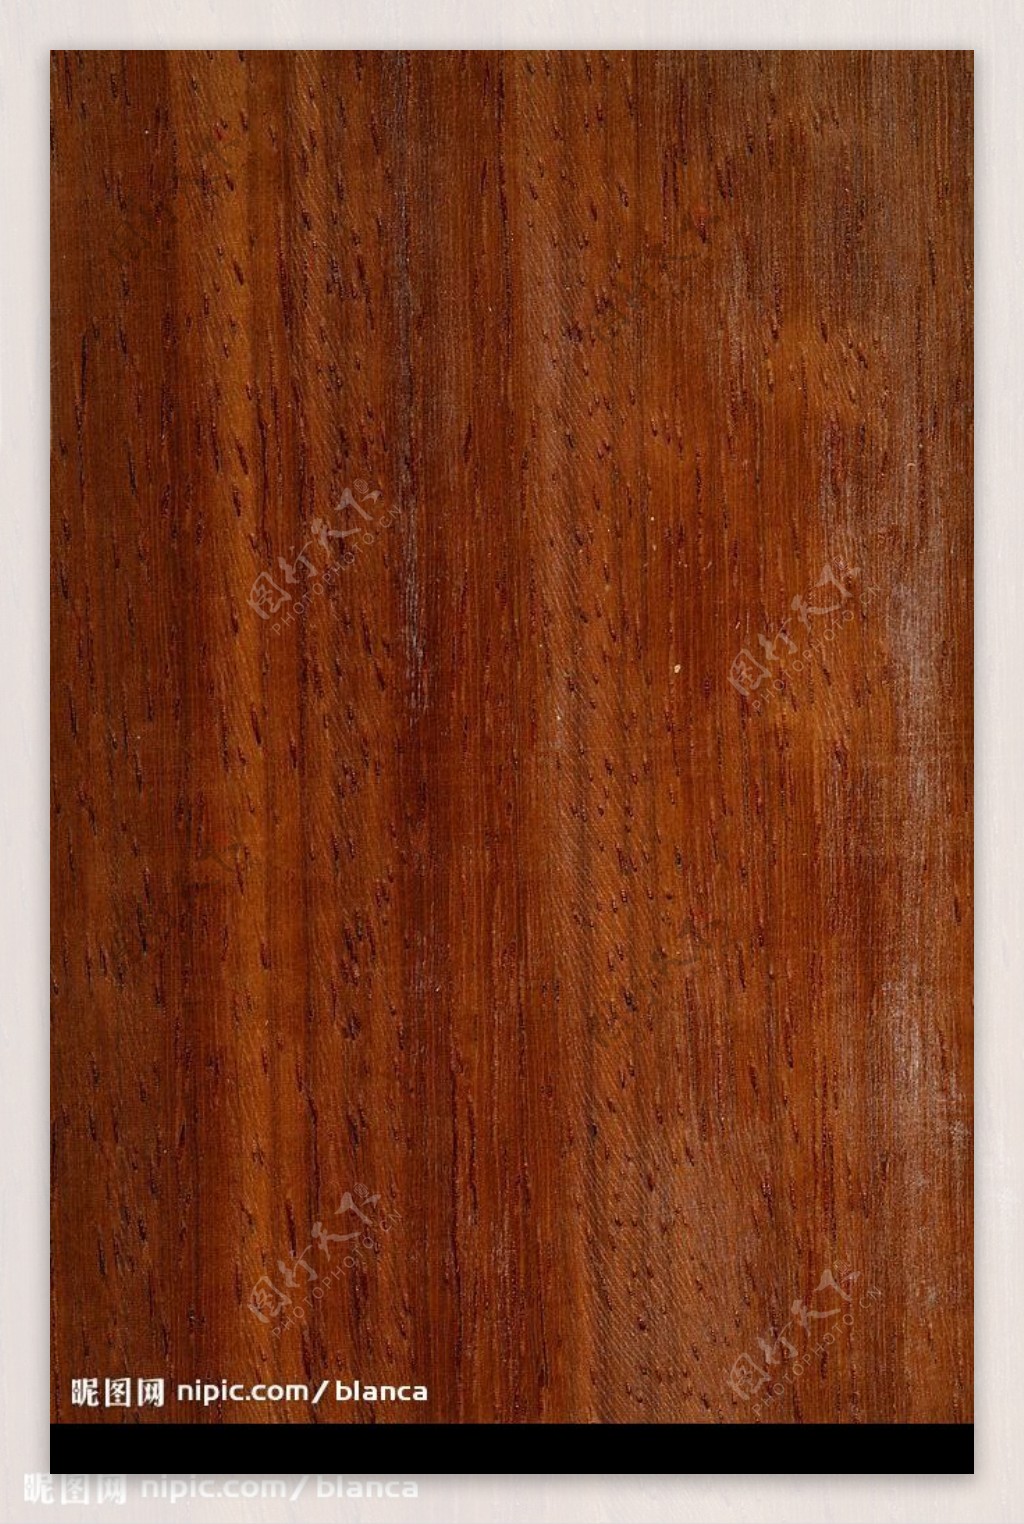 褐色直紋木質底圖图片